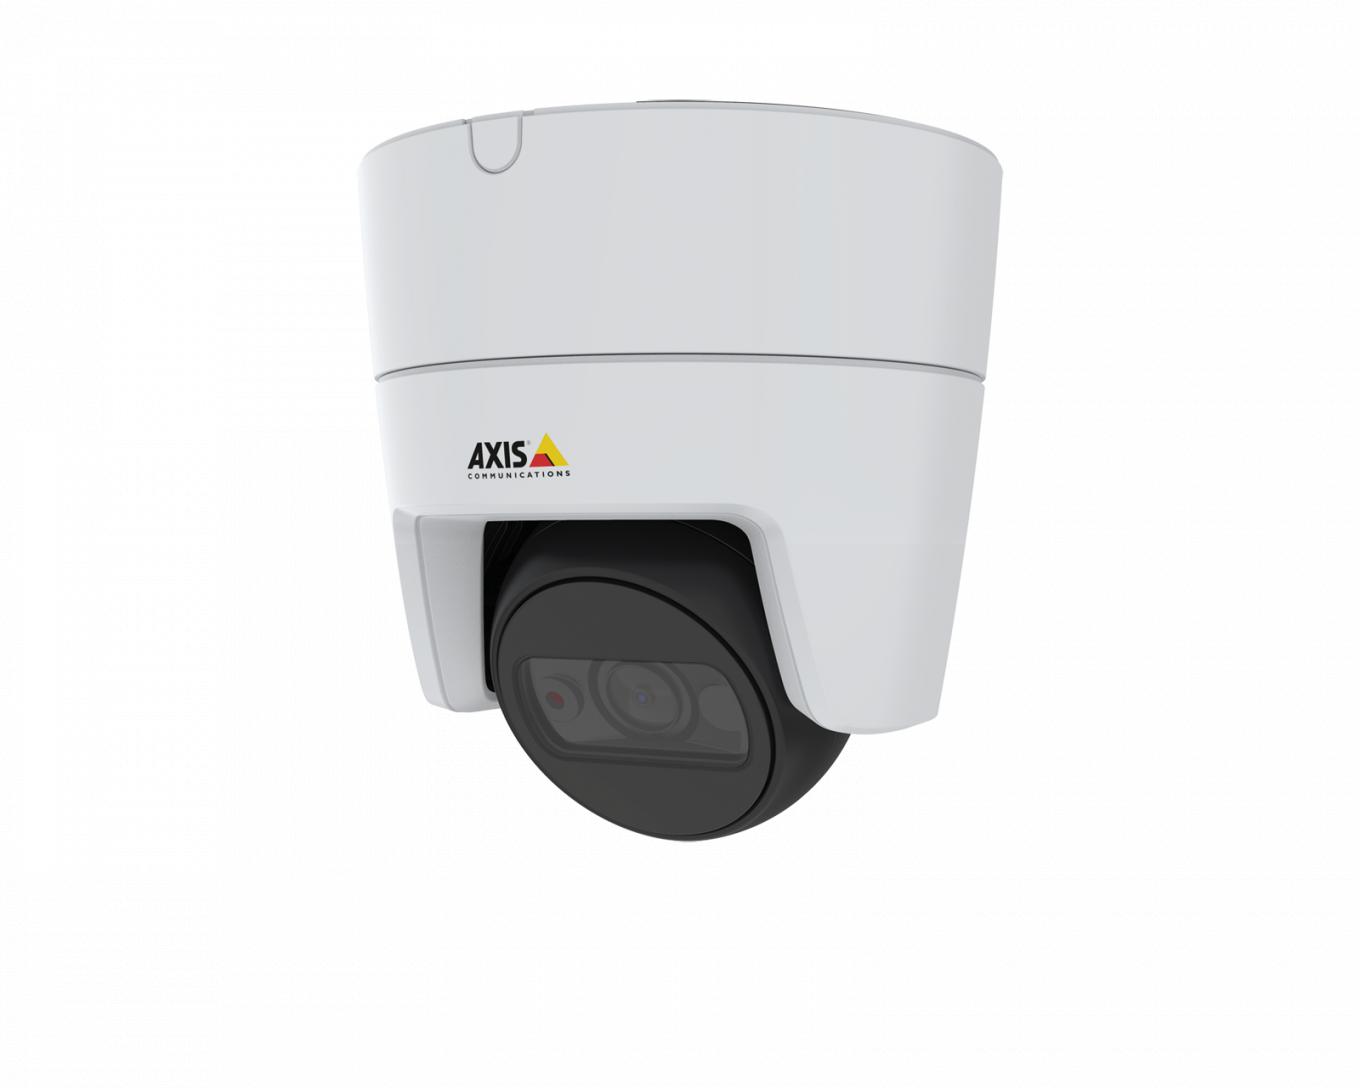 IP-камера AXIS M3115-LVE, установленная на потолке, вид под углом слева